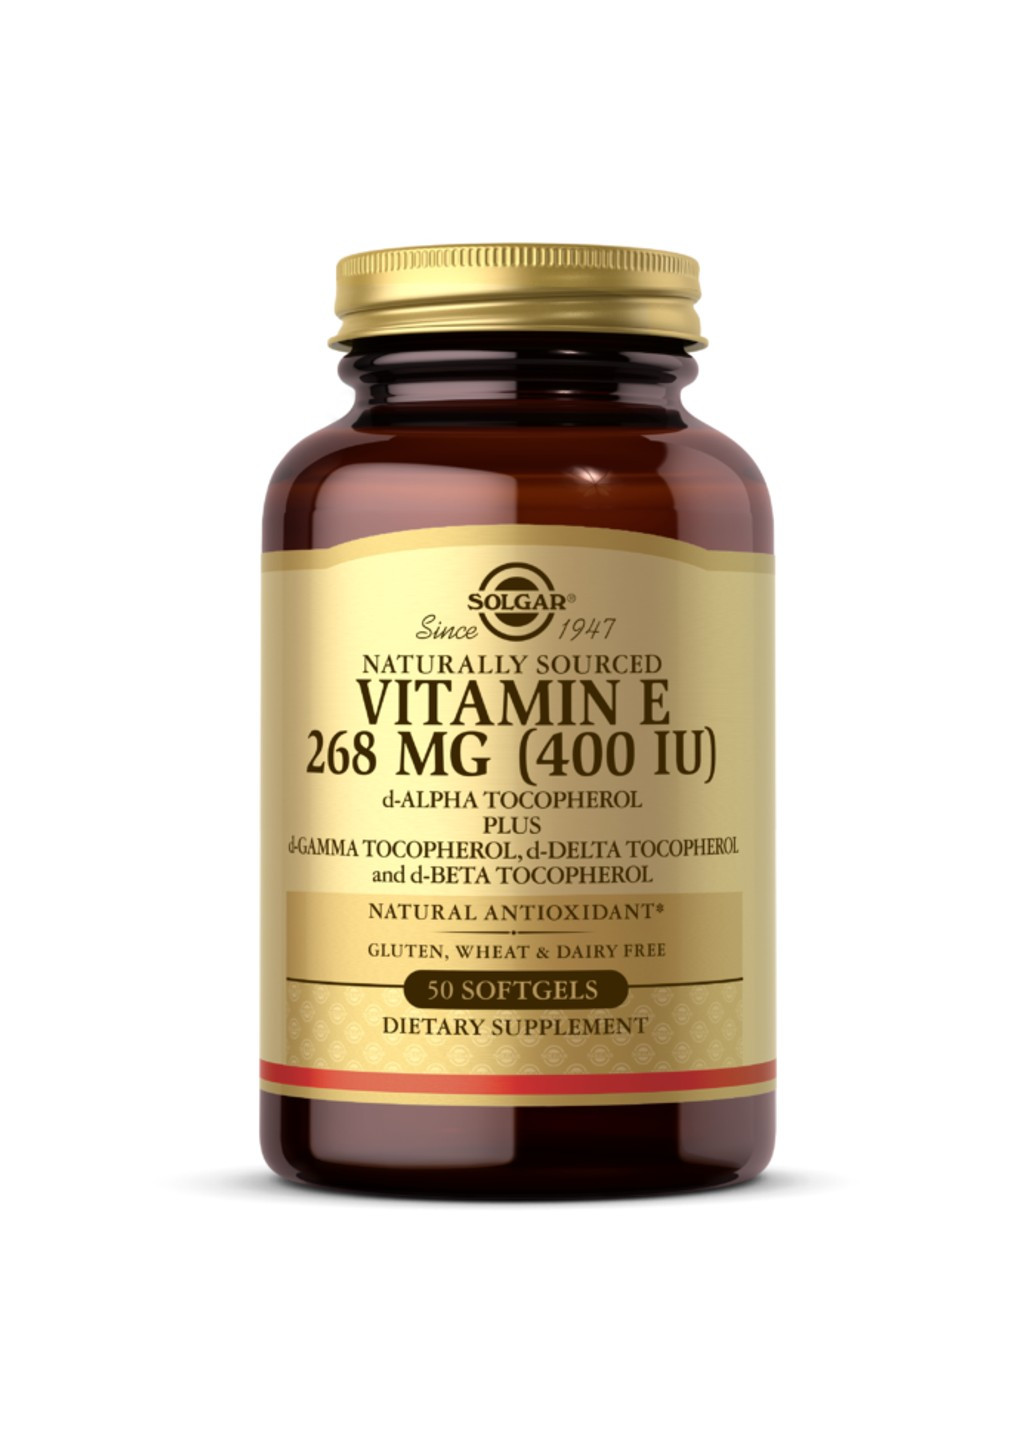 Натуральный витамин Е Vitamin E 268 мг 400 МЕ 50 желатиновых капсул солгар Solgar (255410035)